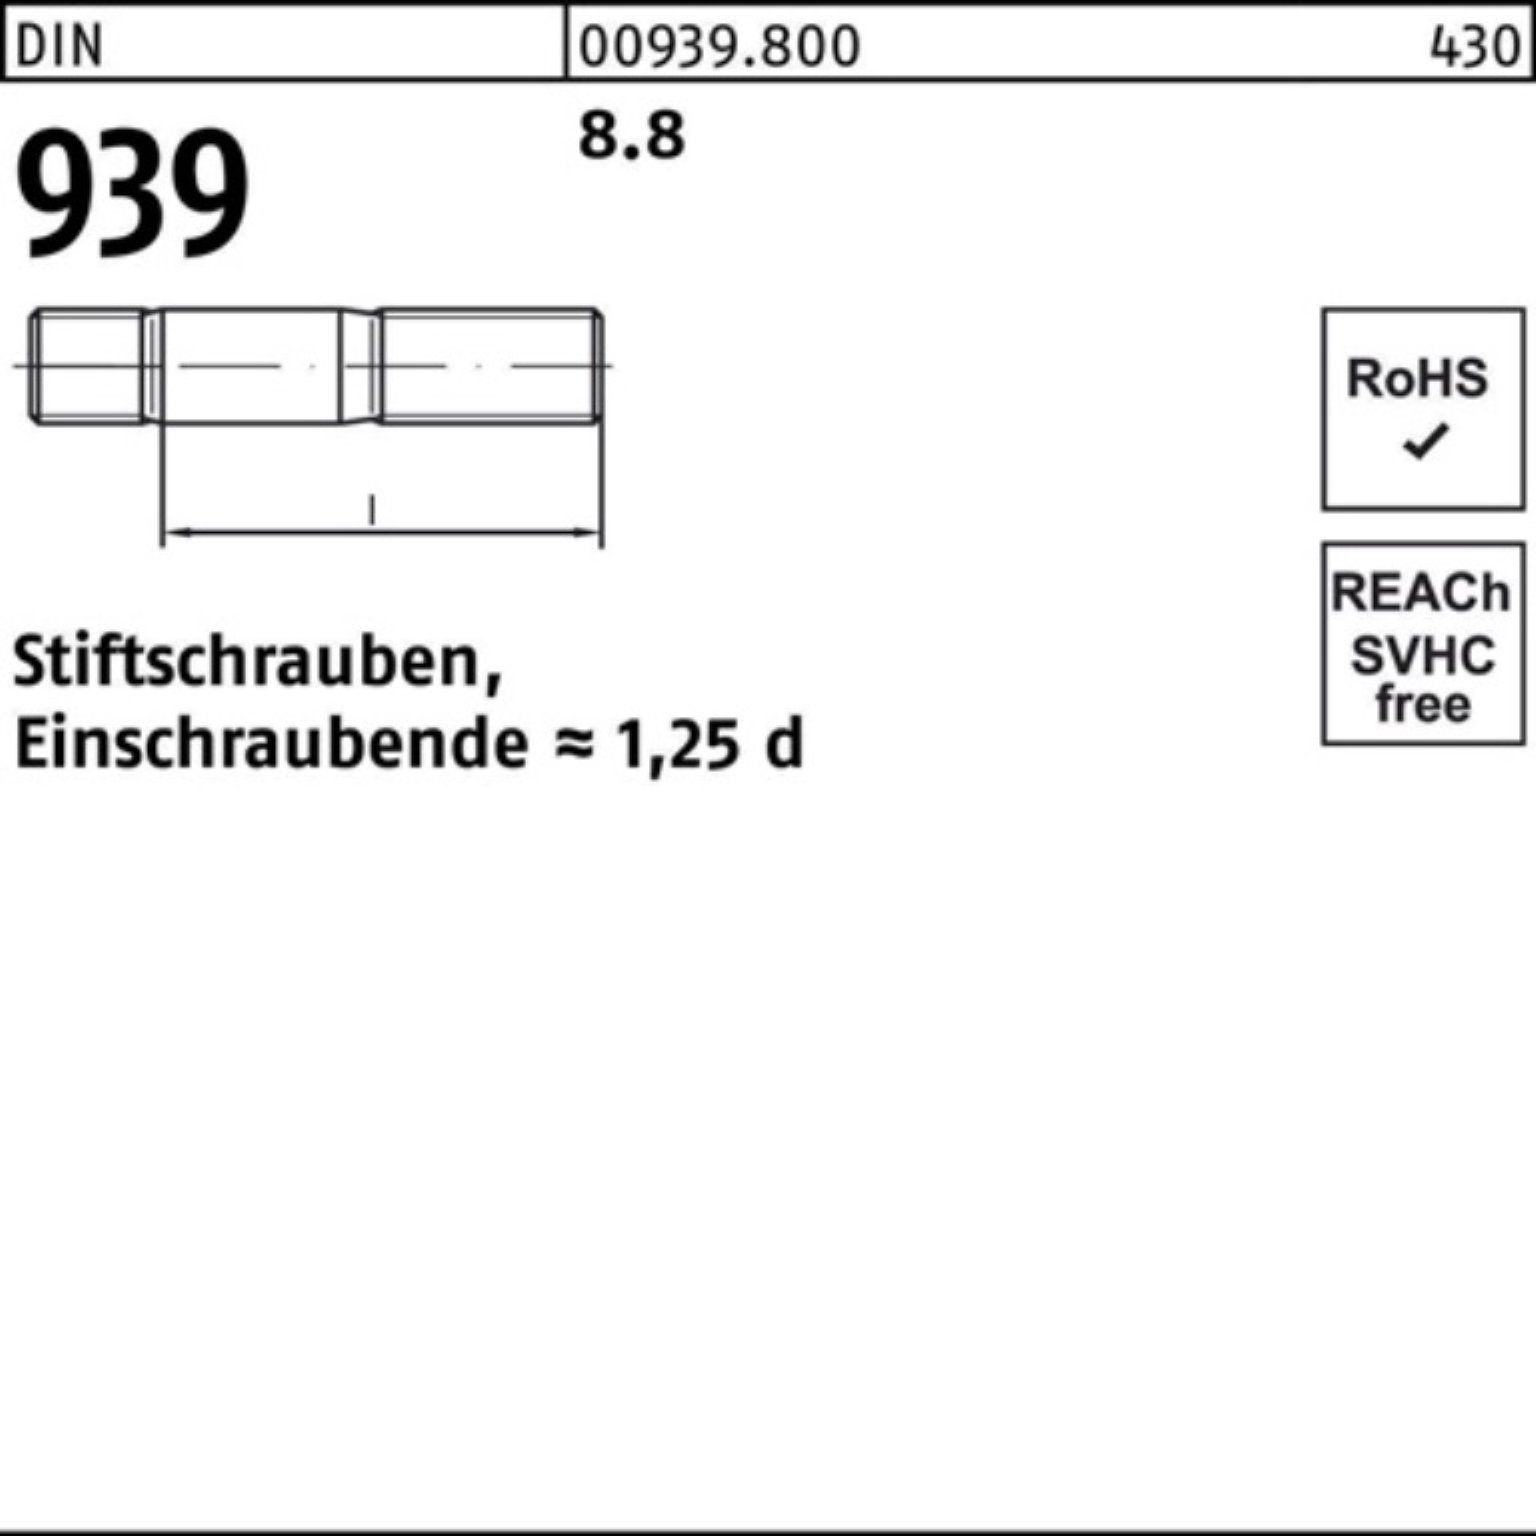 Pack S M6x Stiftschraube Einschraubende=1,25d 25 100 8.8 Reyher 939 Stiftschraube 100er DIN